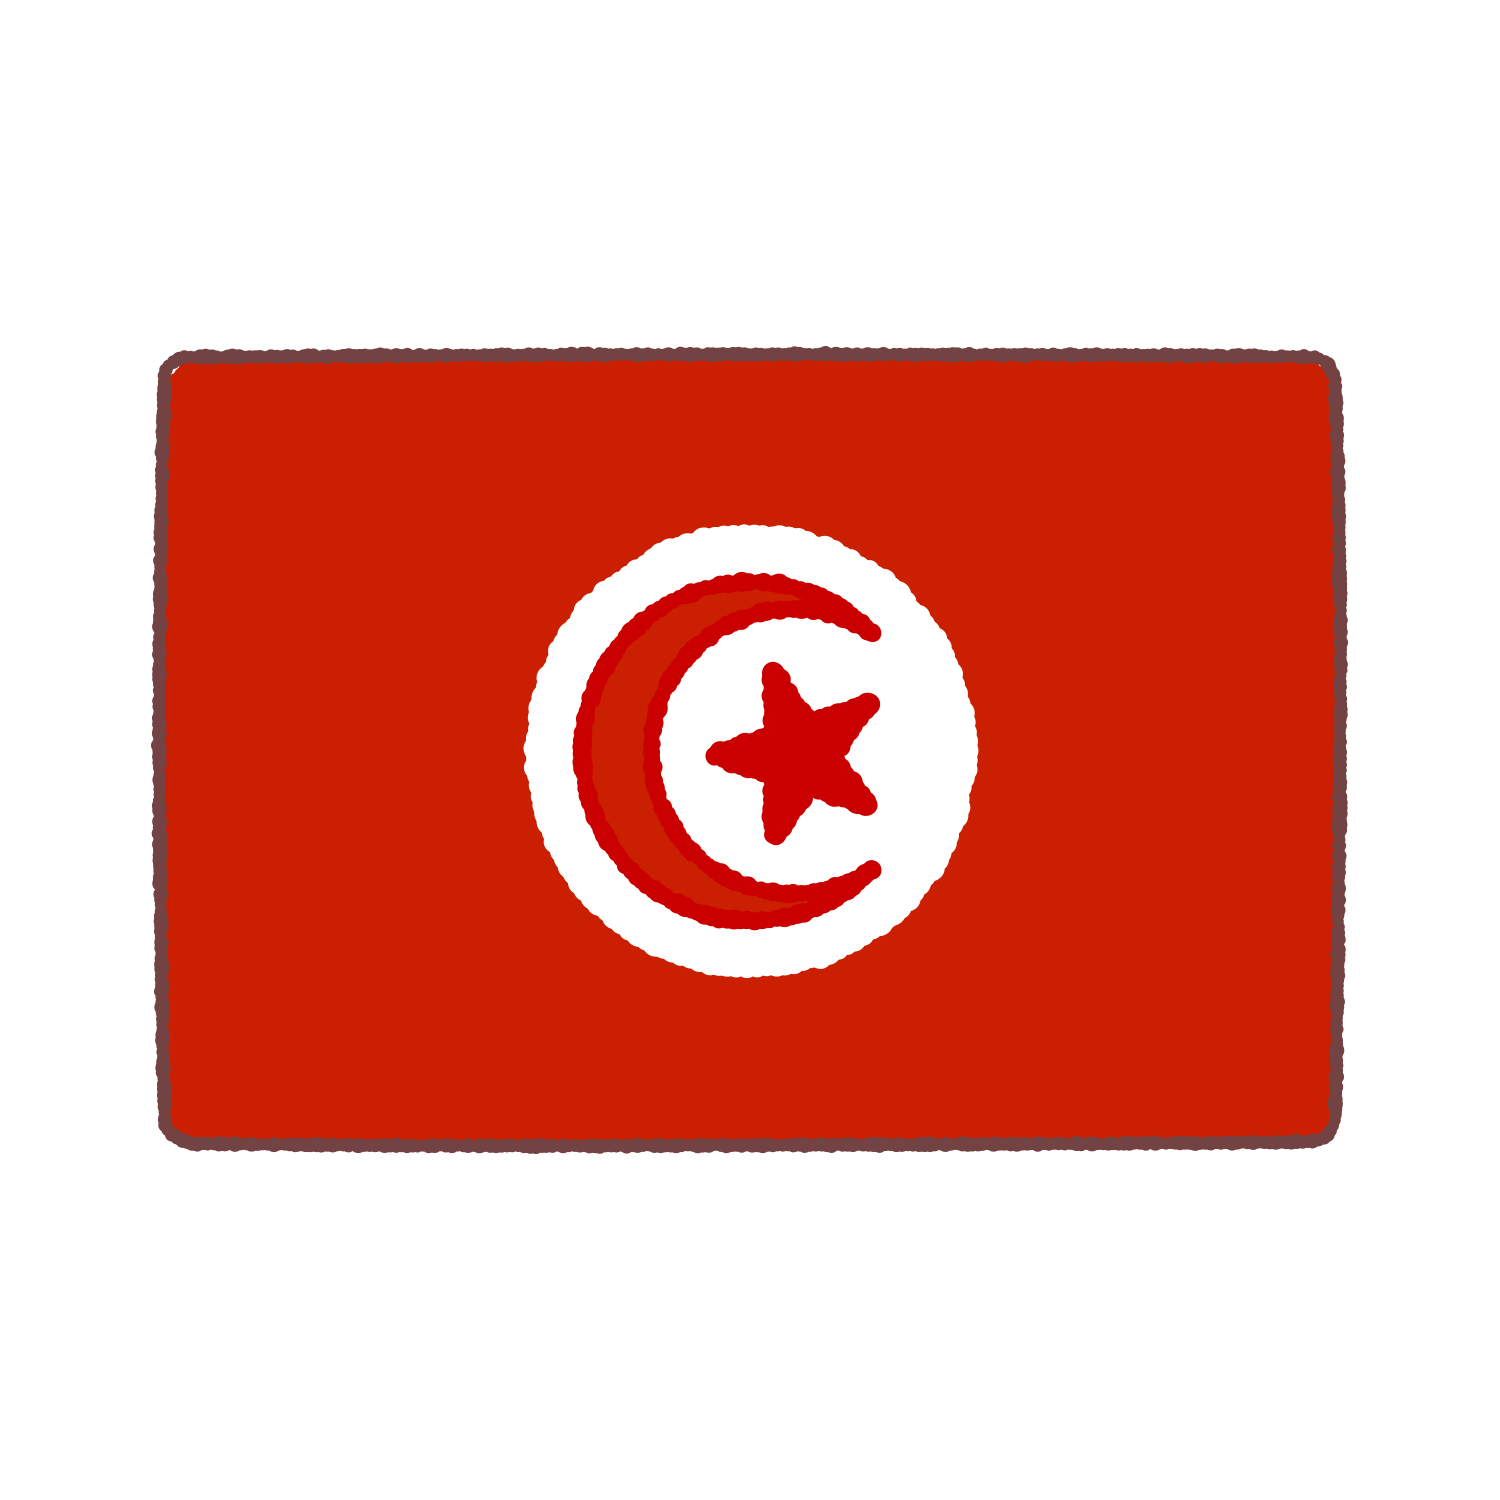 チュニジア国旗のイラスト